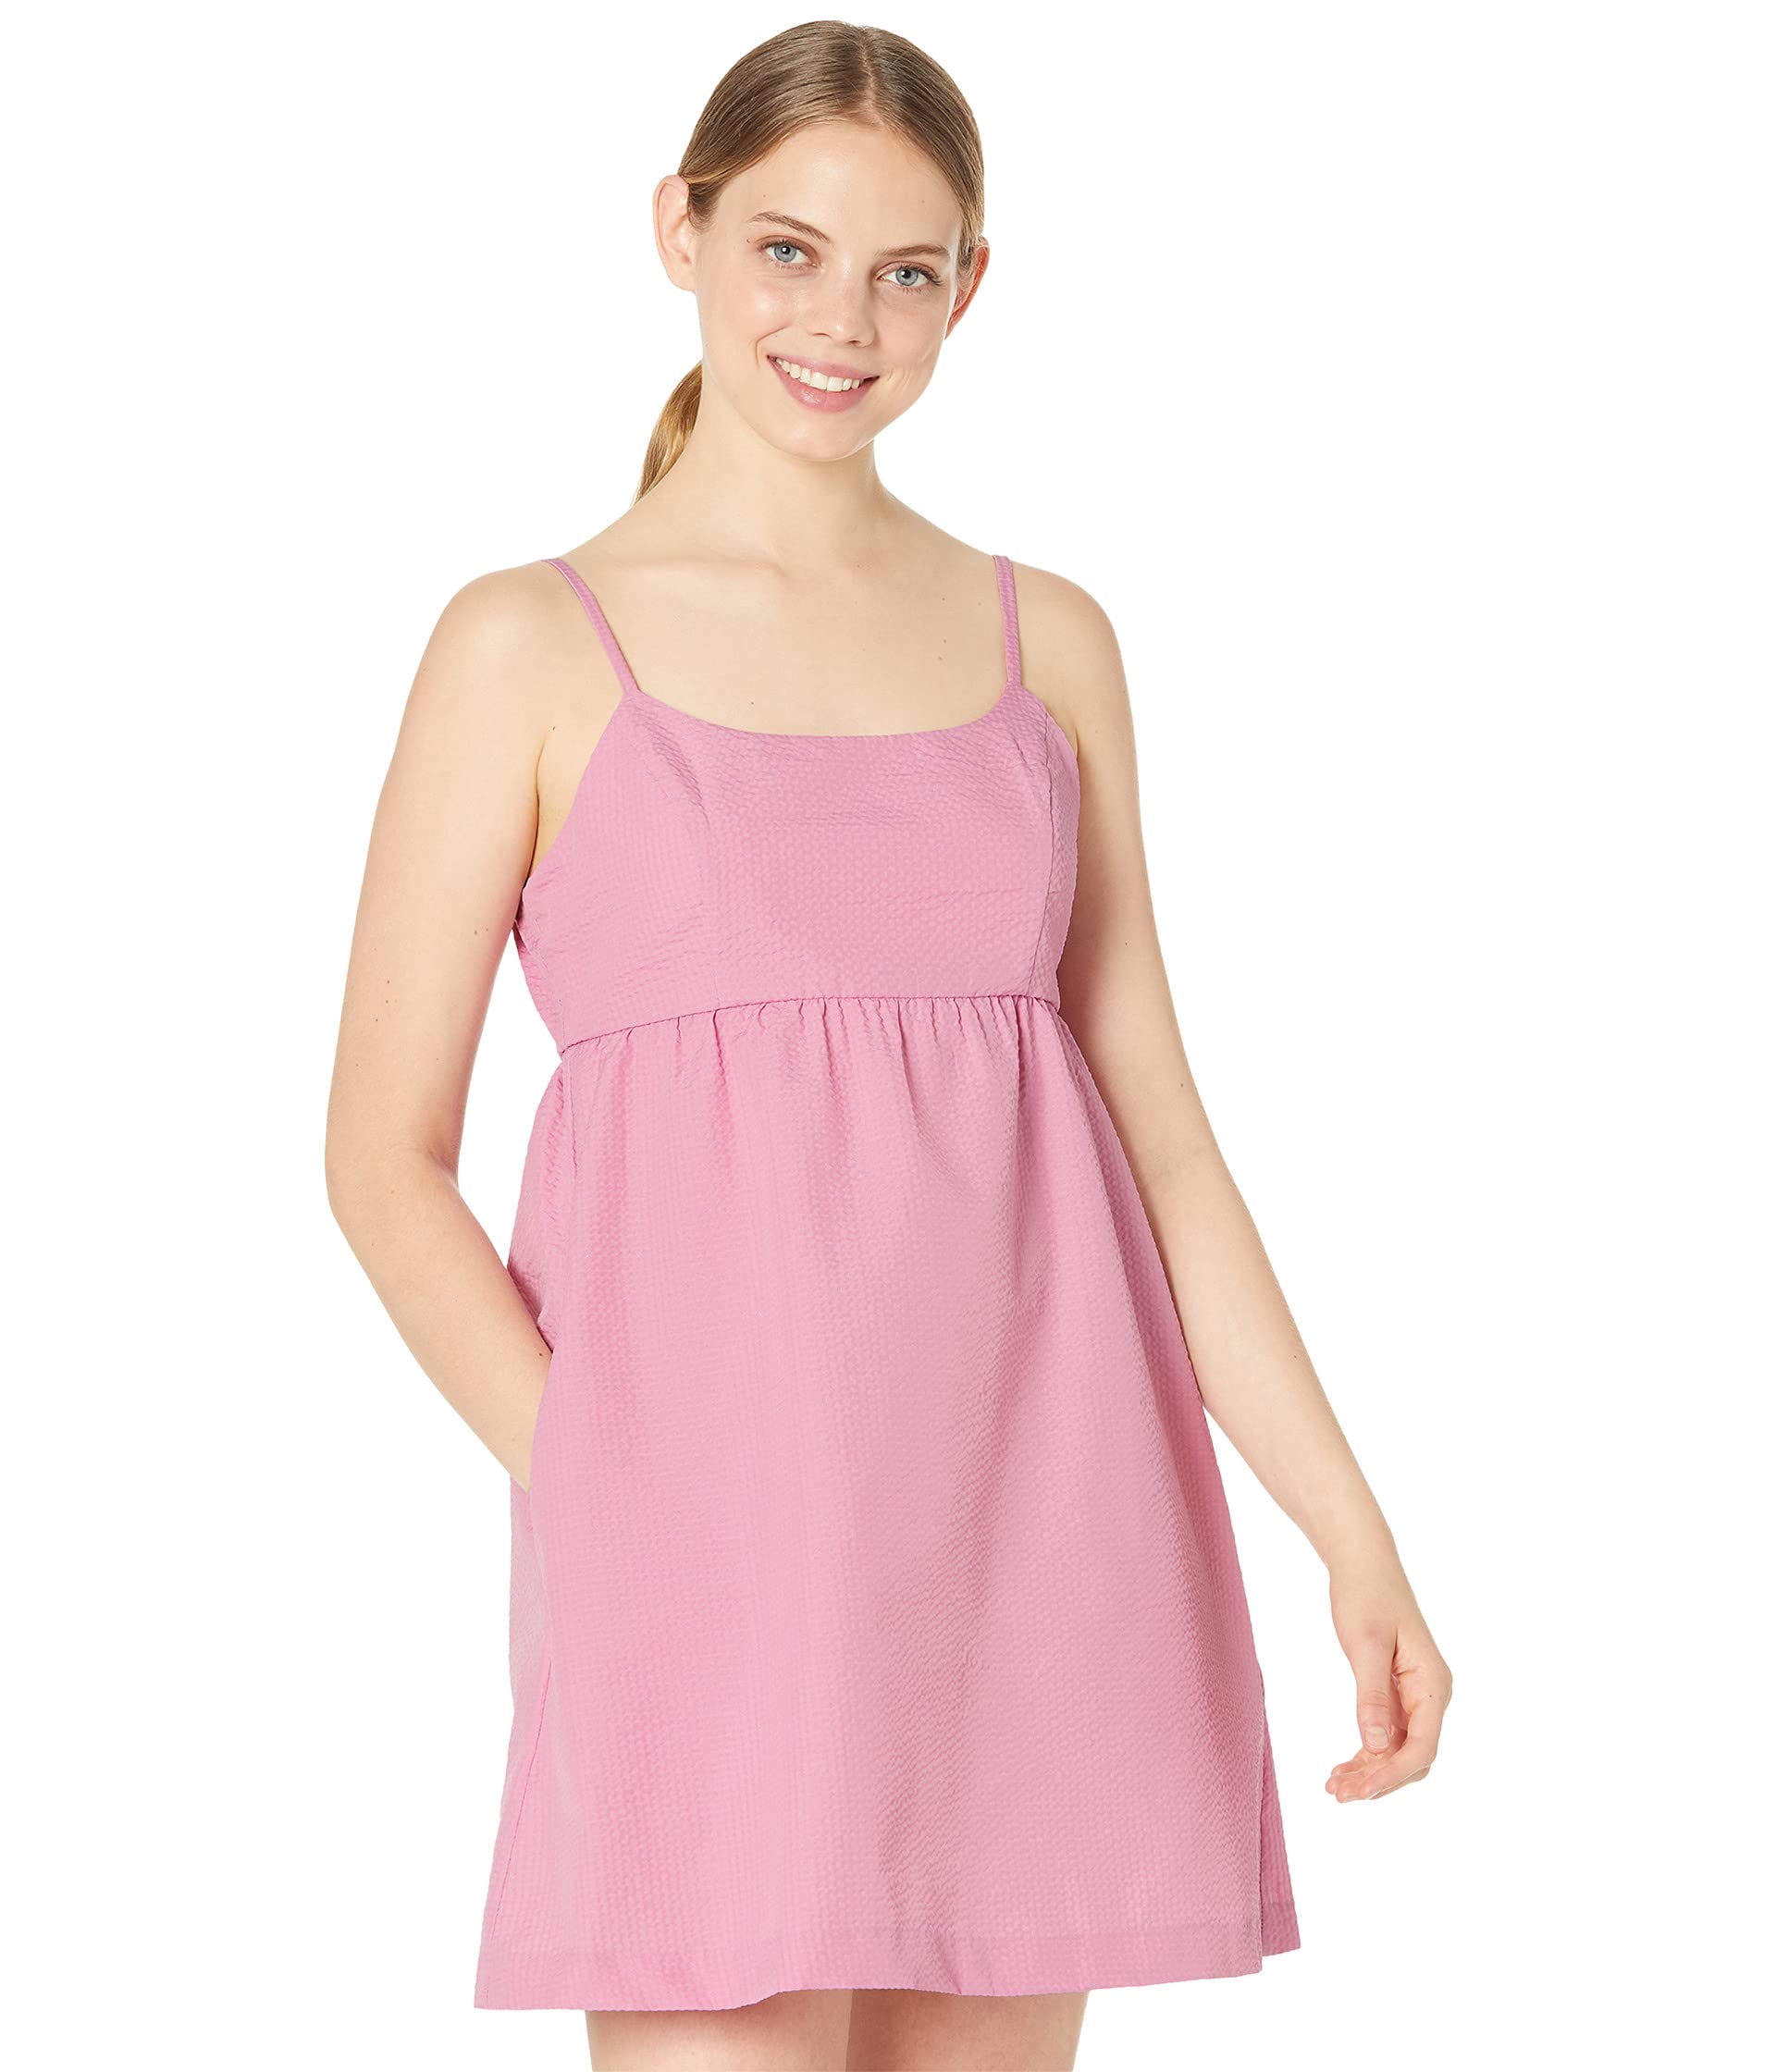 Платье BCBGeneration, Babydoll Cami Dress GTX1D73 чернила ruby r10 hyb light magenta f642 1012